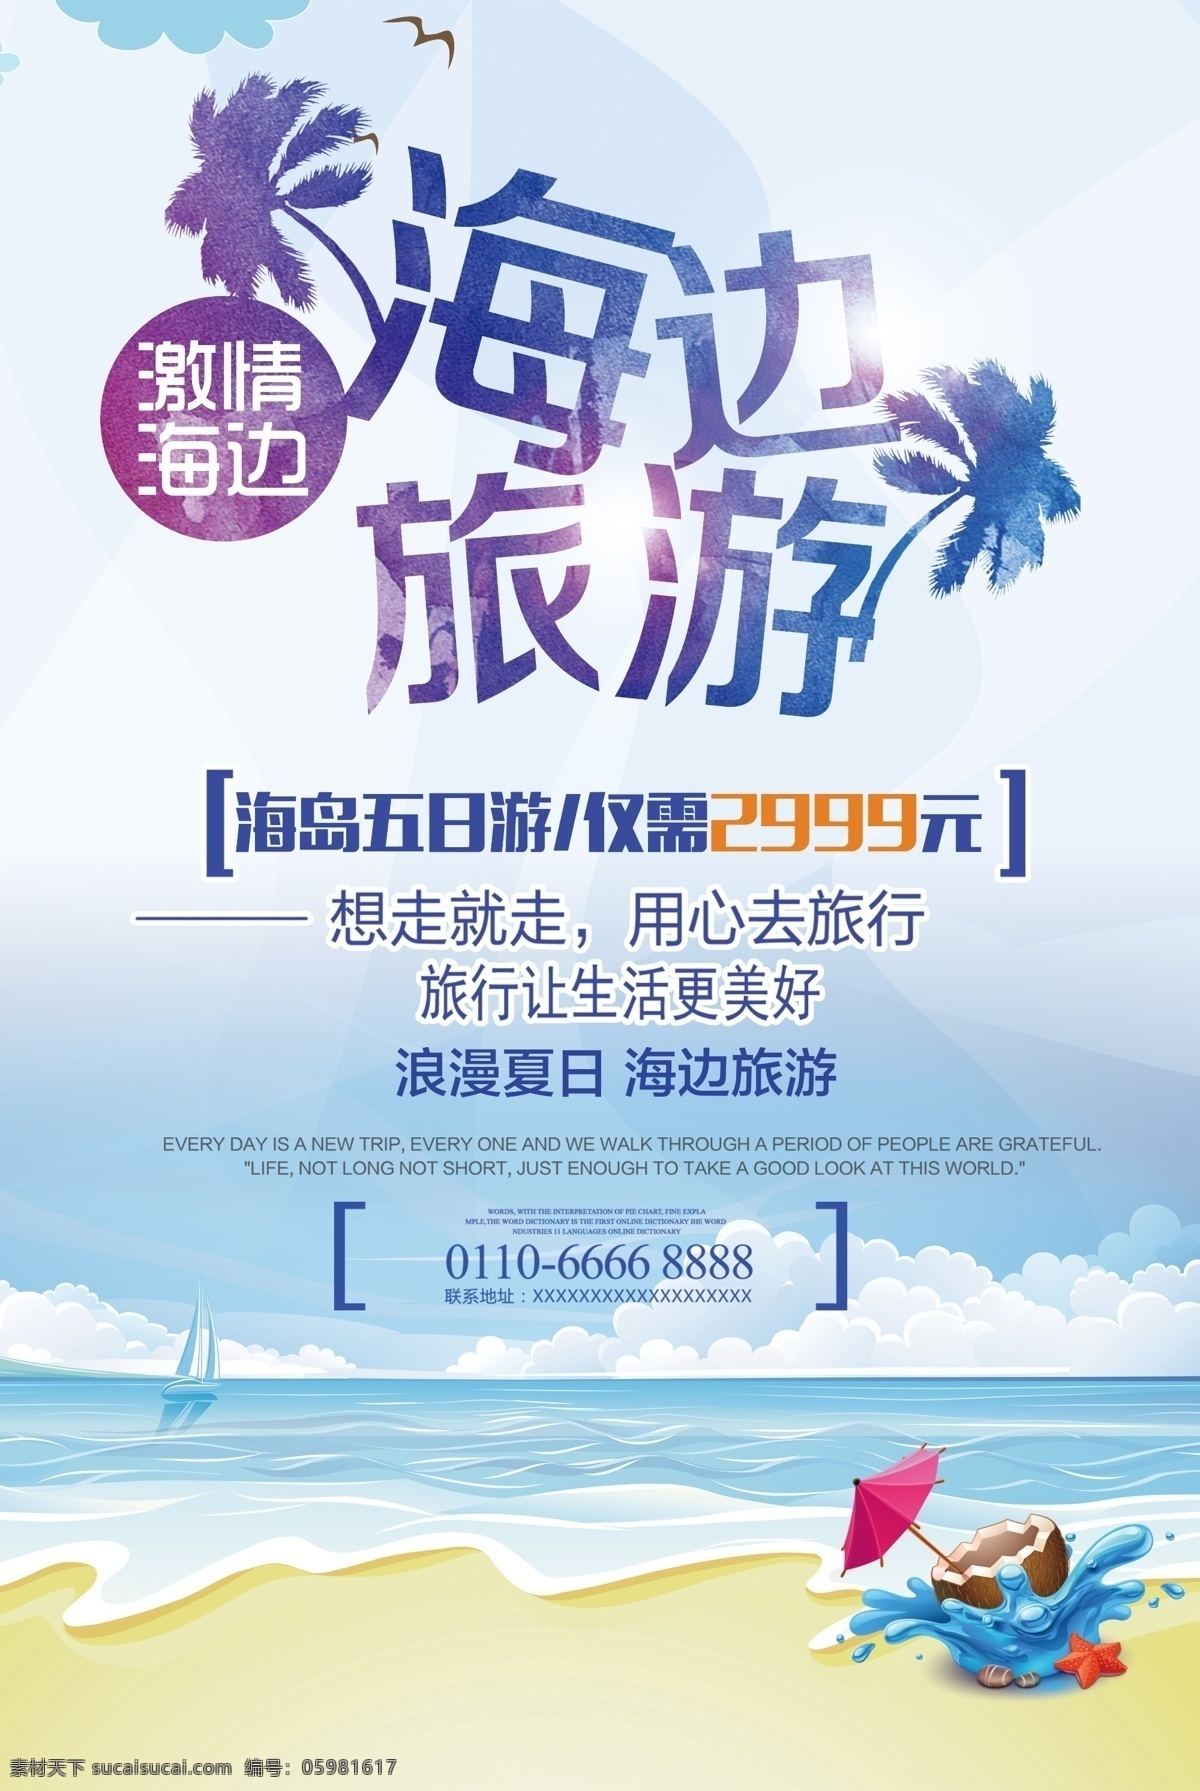 海岛 旅游 大气 宣传 海报 旅游海报设计 中国风海报 浪漫素材 psd设计 节假日 旅游展板设计 中国风景海报 水彩素材 高清海报素材